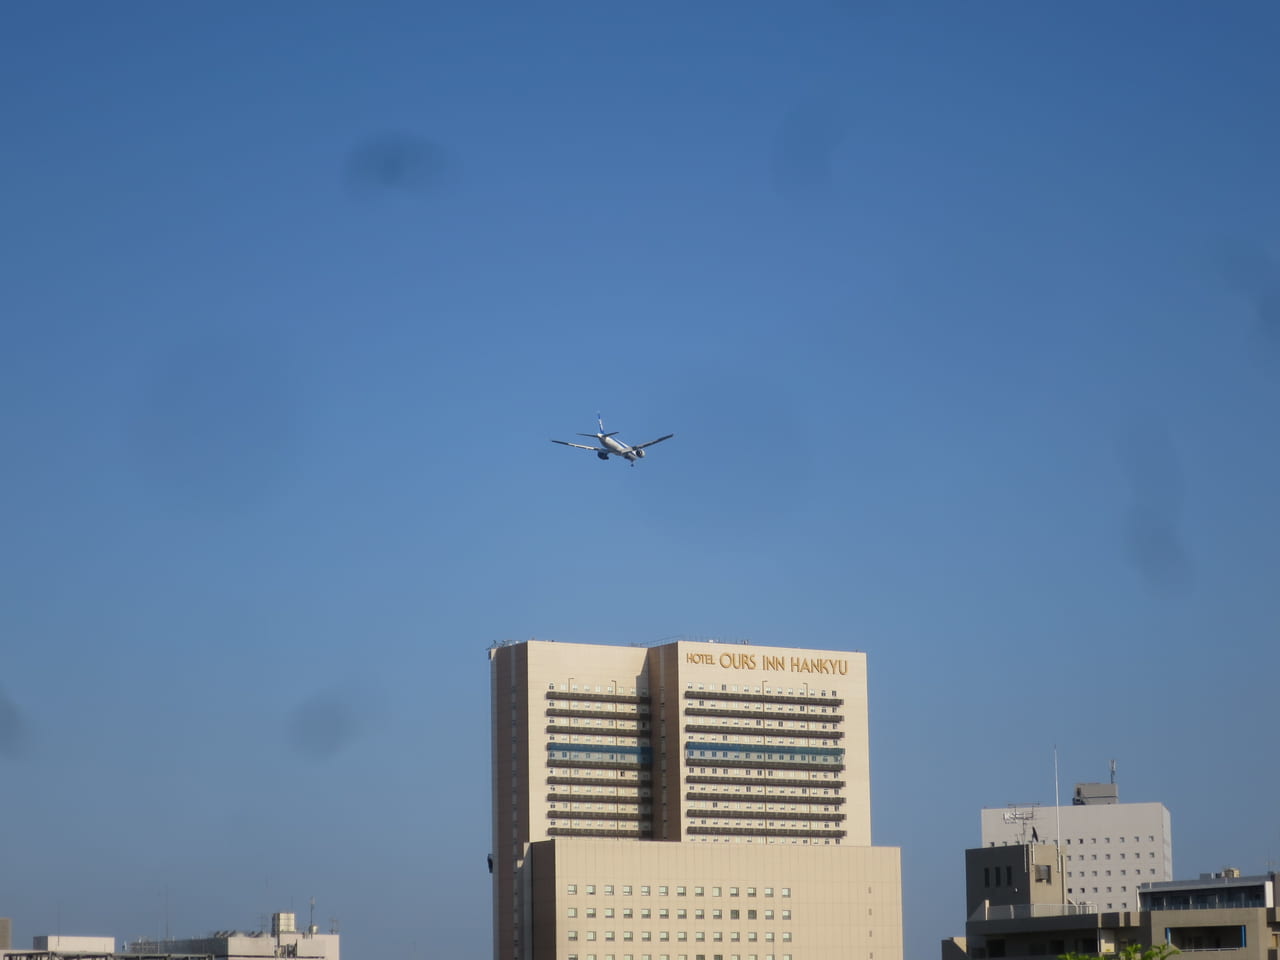 大井町駅上空を通過する飛行機